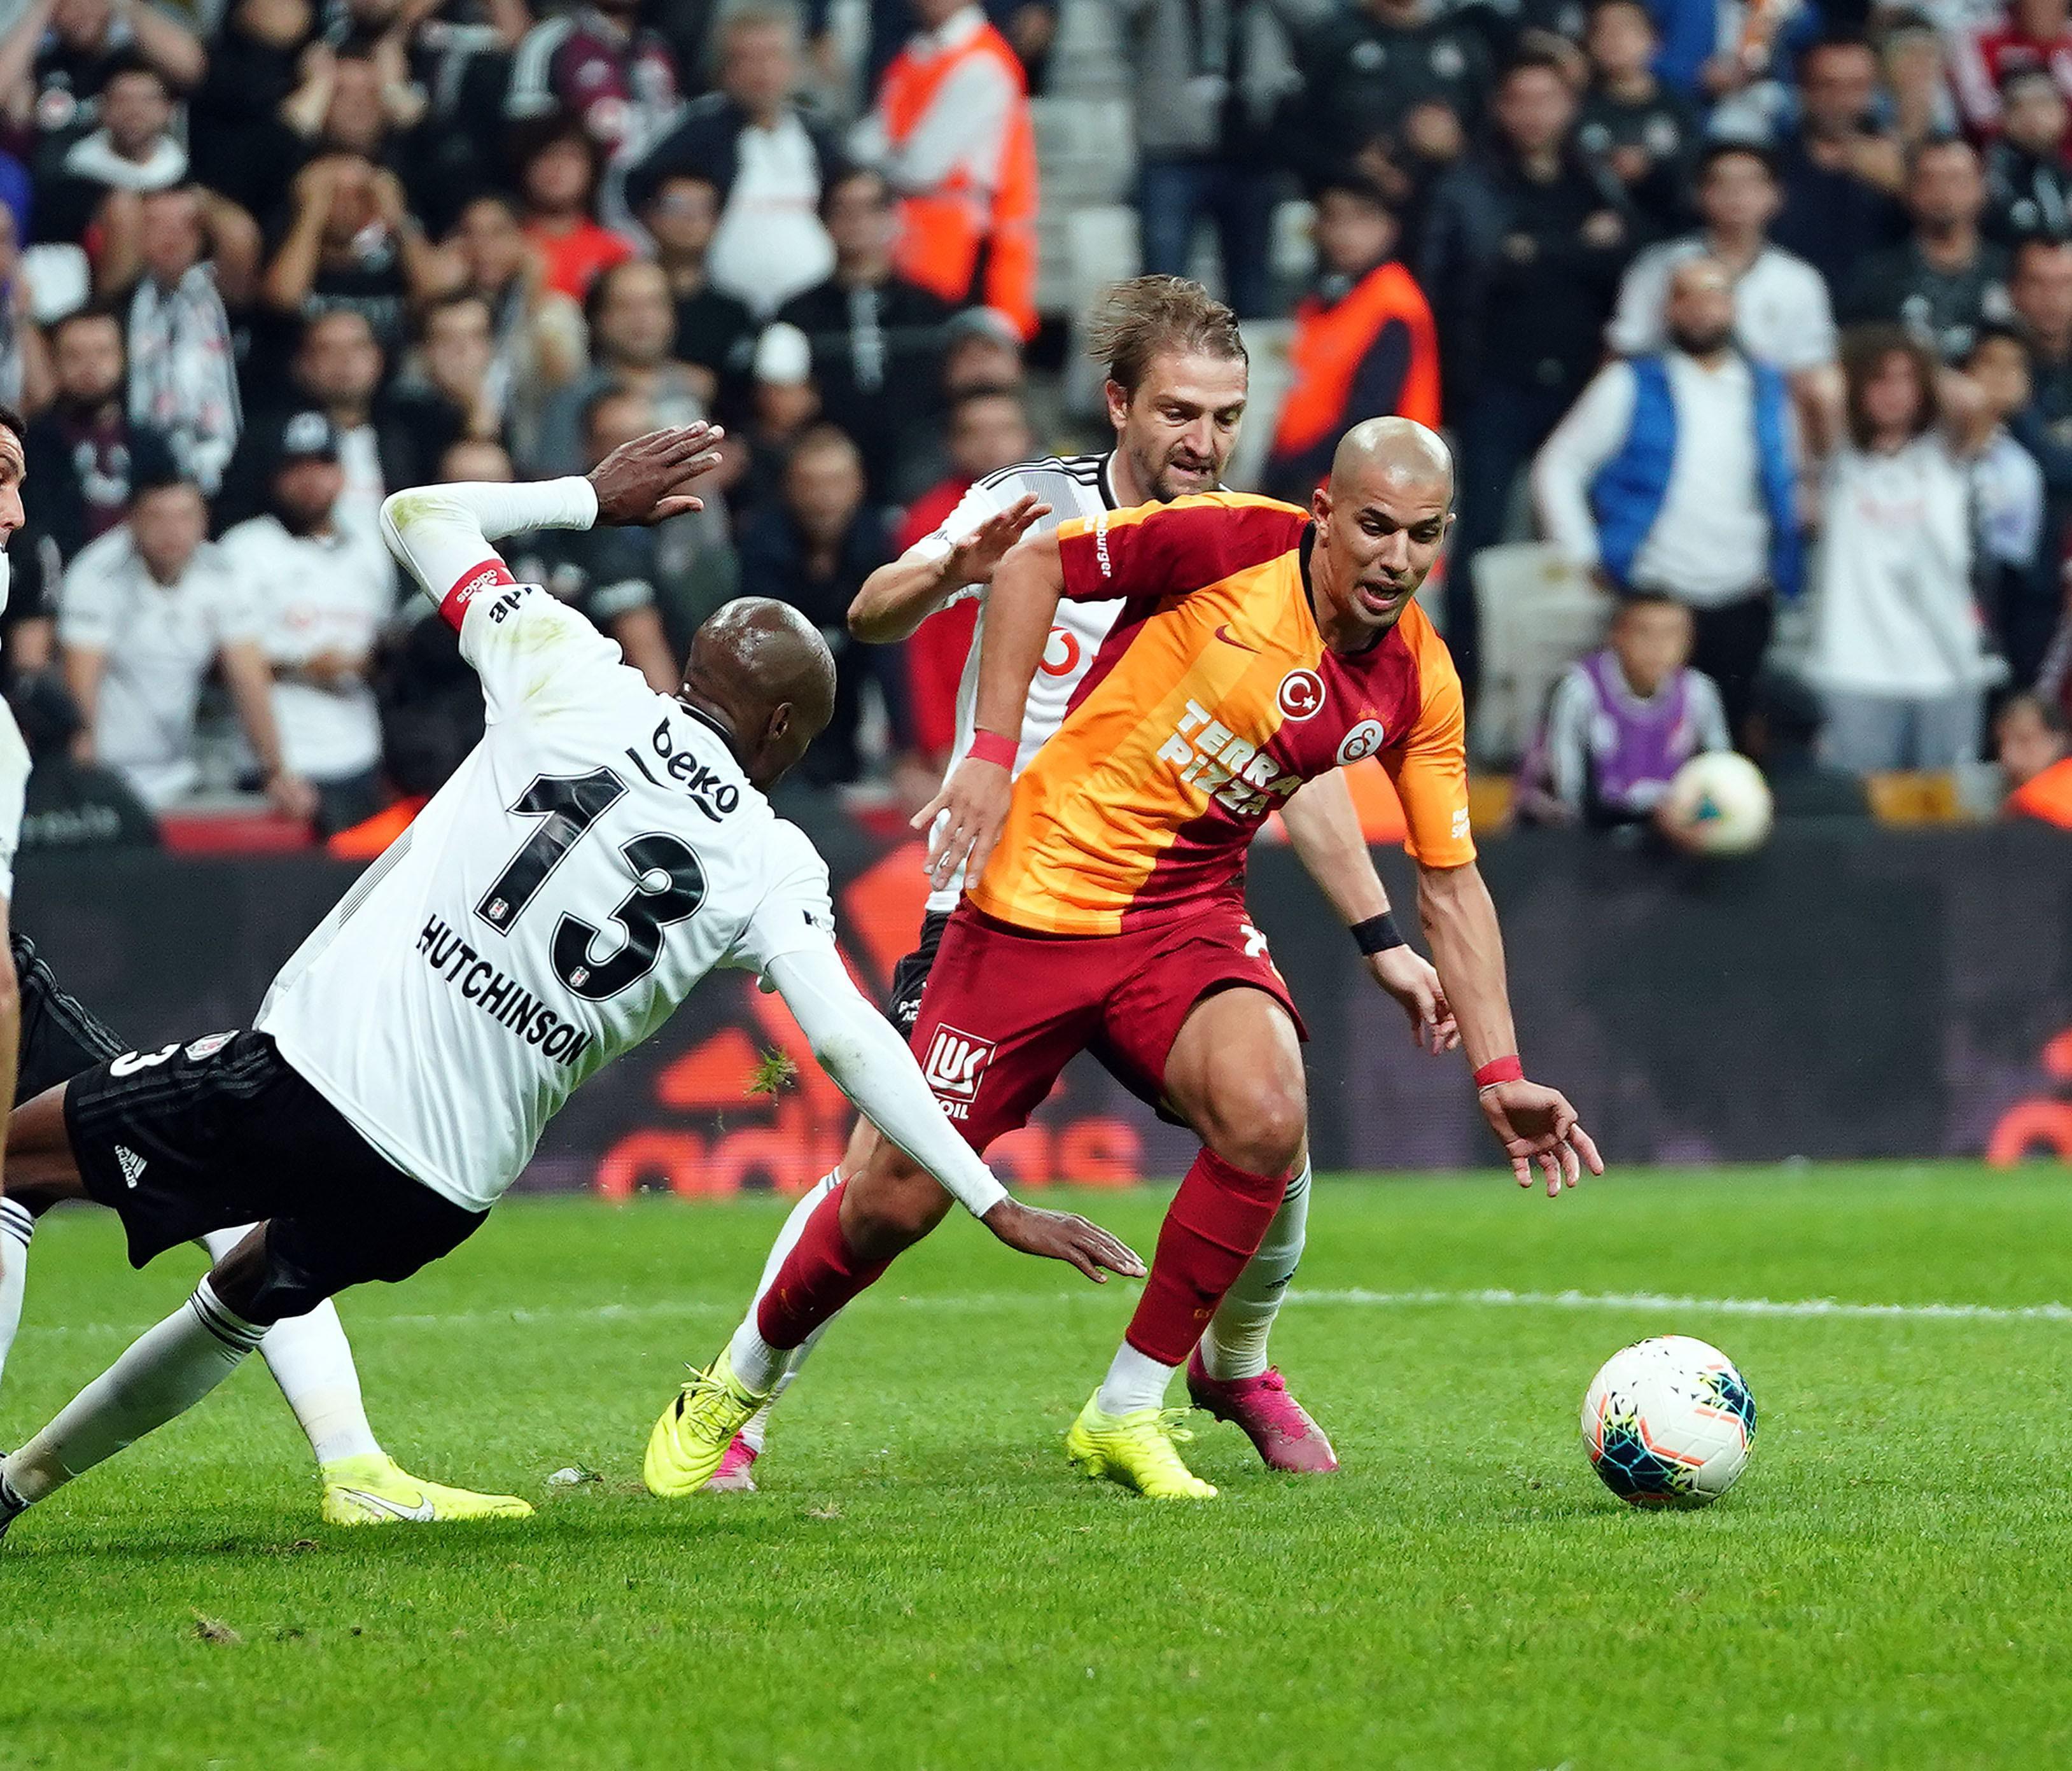 Beşiktaş evinde Galatasarayı 1-0 mağlup etti